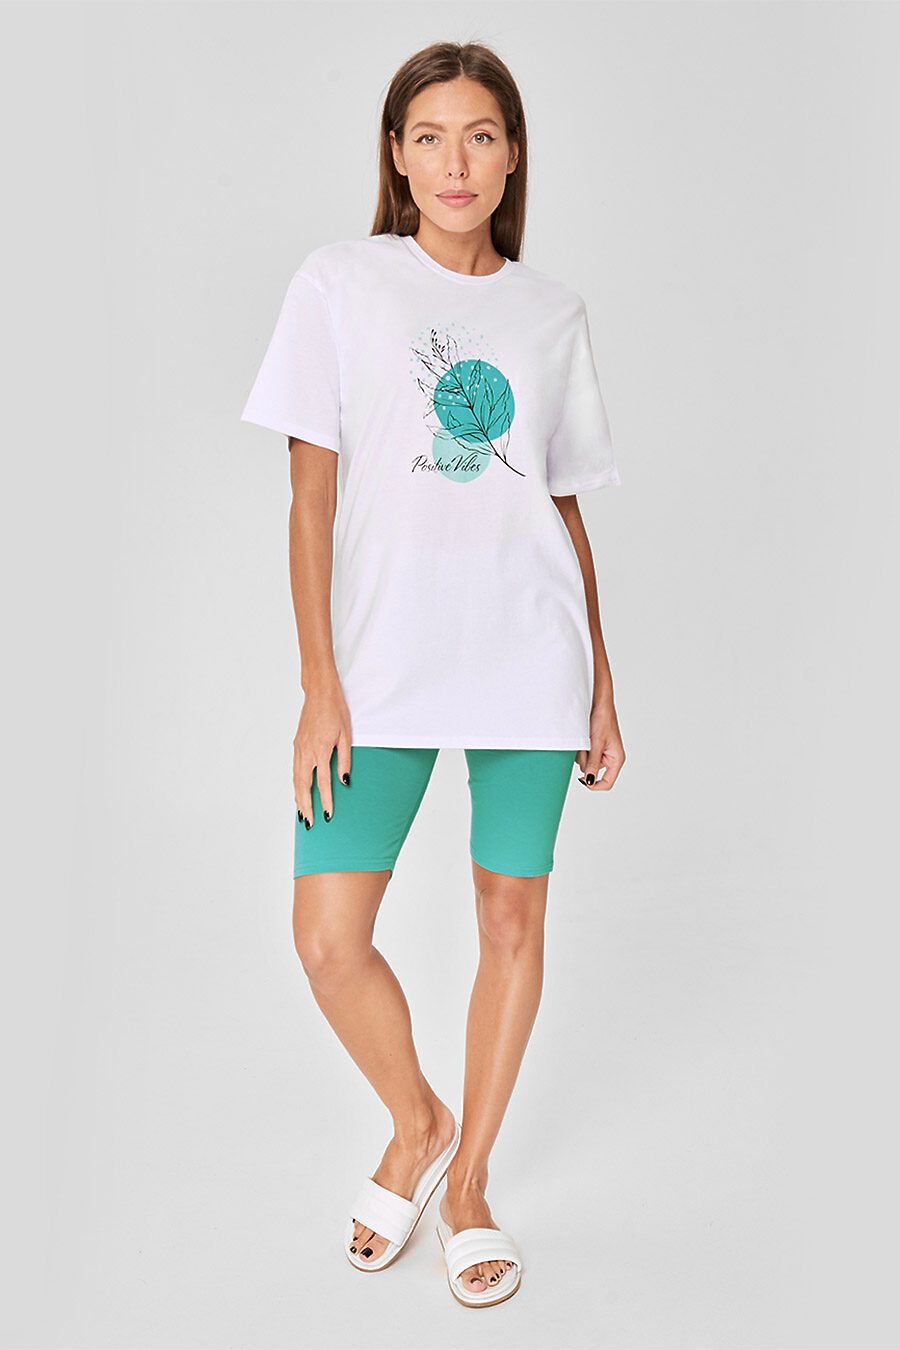 Пижама комплект для женщин SENSERA 775107 купить оптом от производителя. Совместная покупка женской одежды в OptMoyo